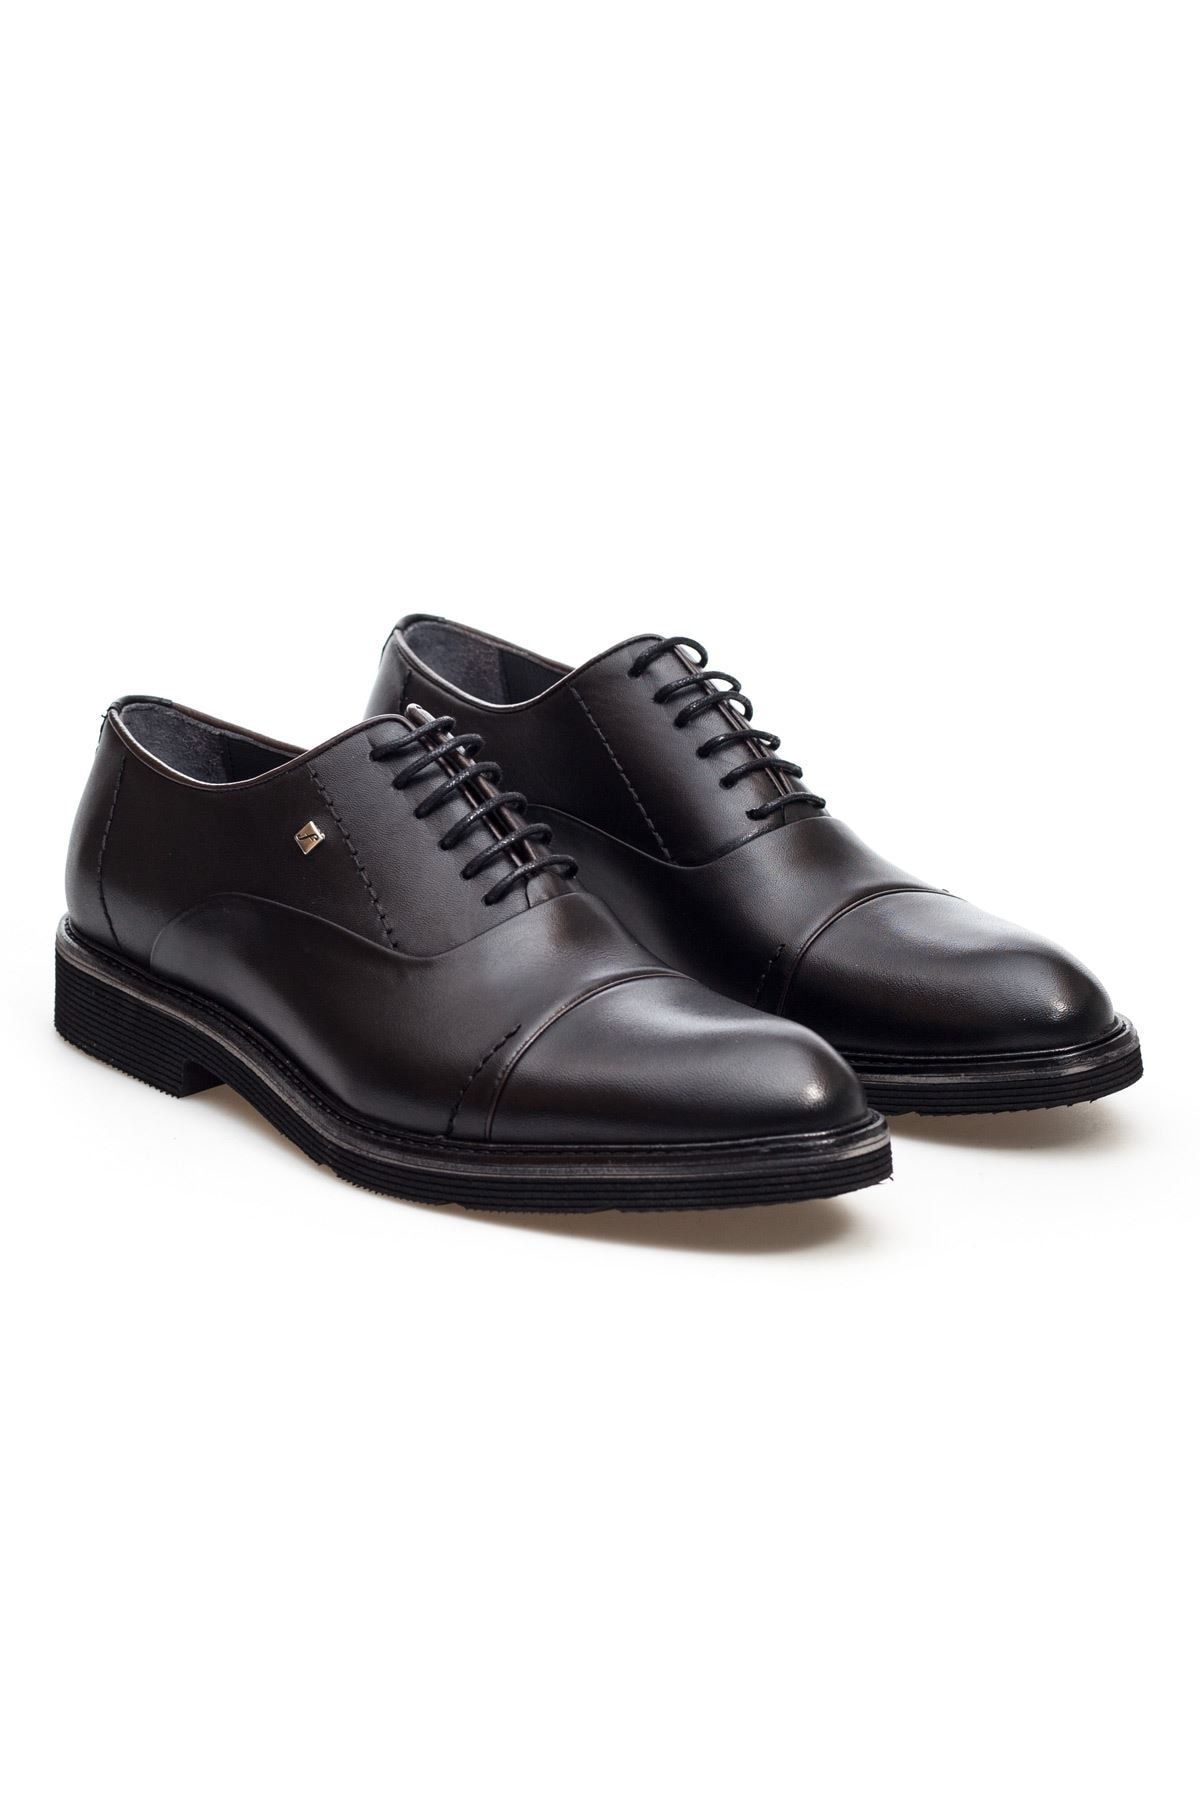 Fosco Siyah Hakiki Deri Bağcıklı Klasik Erkek Ayakkabı